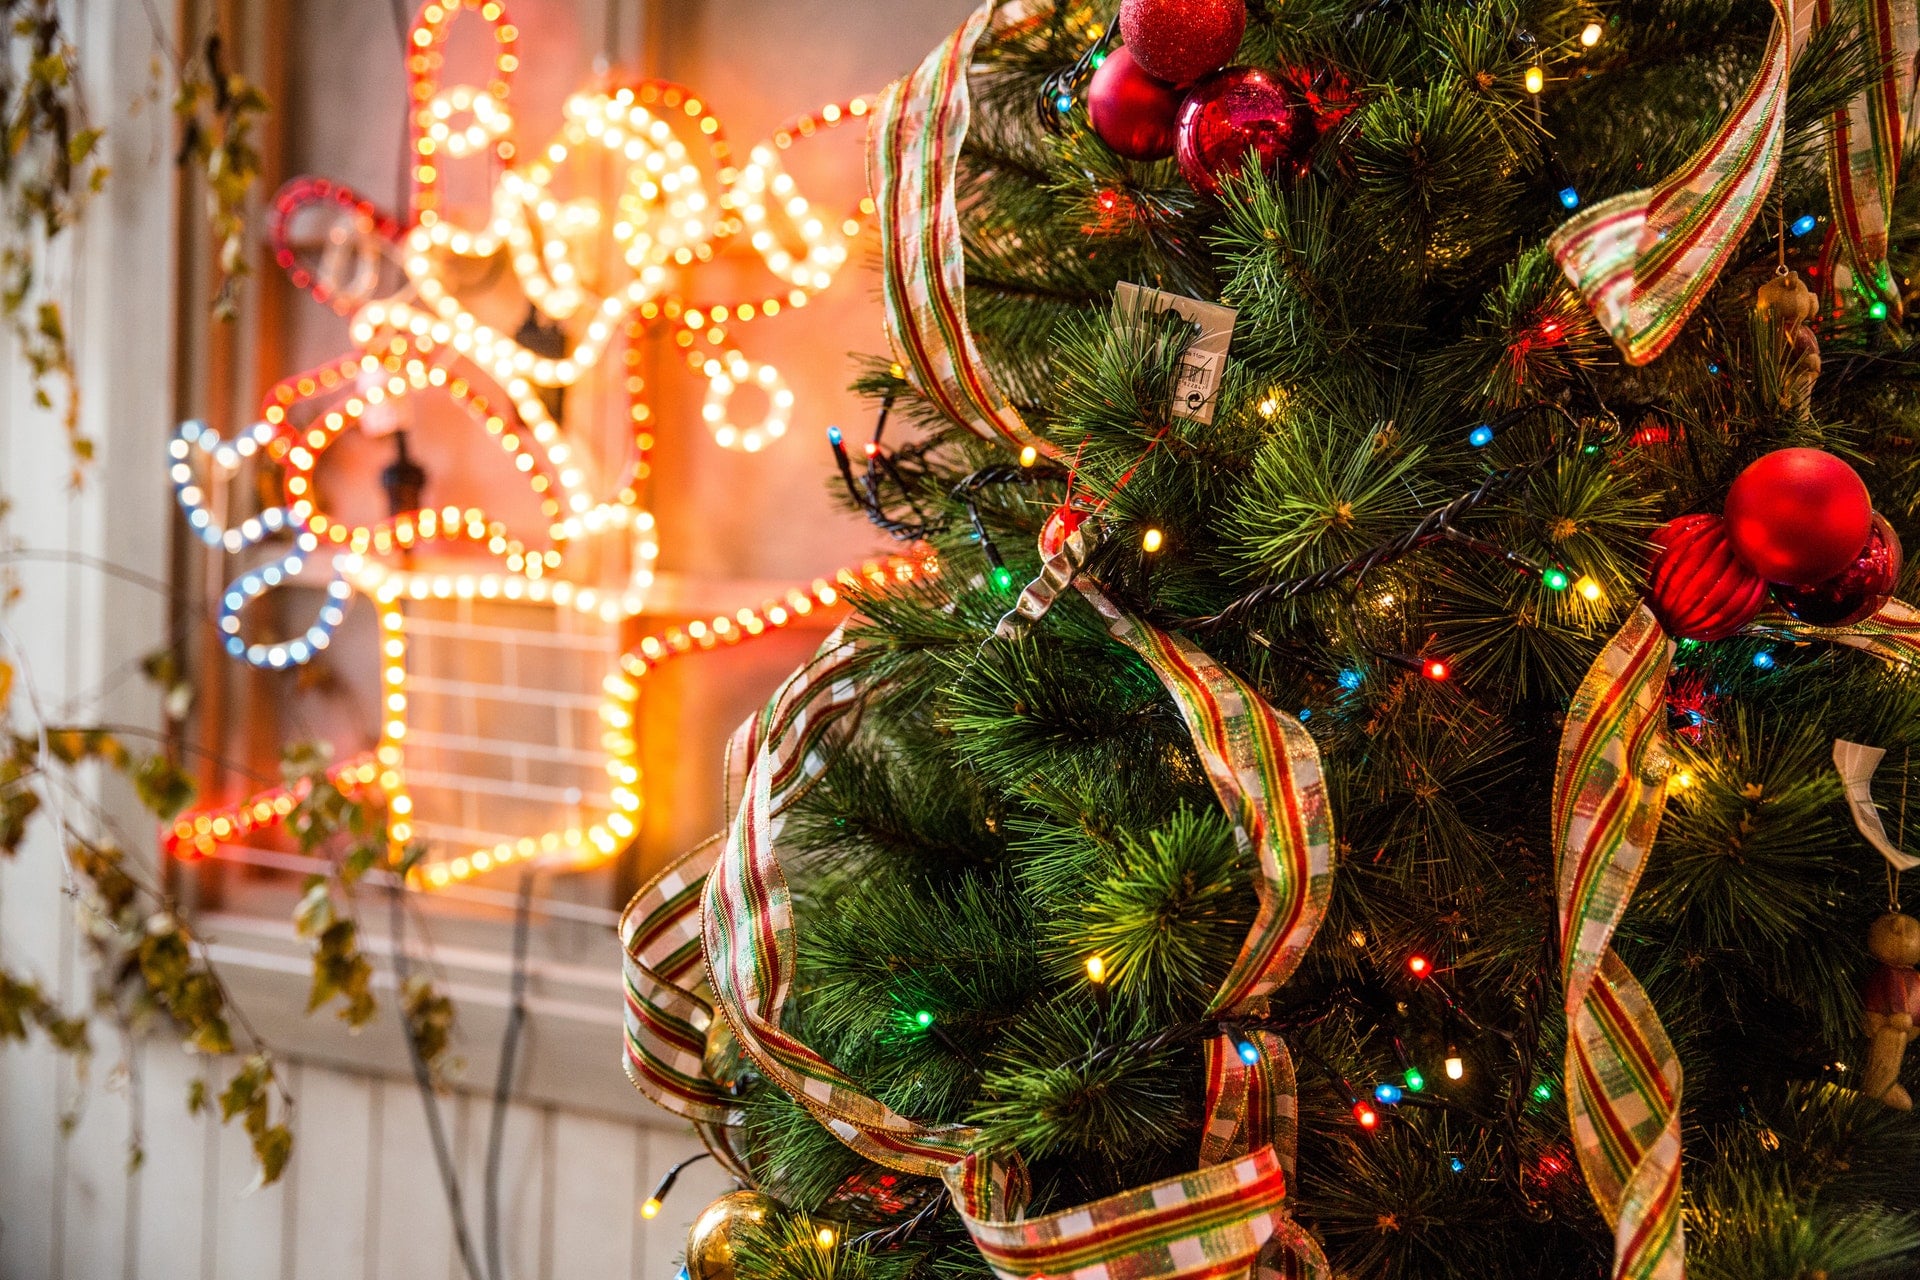 Christmas lights and tree